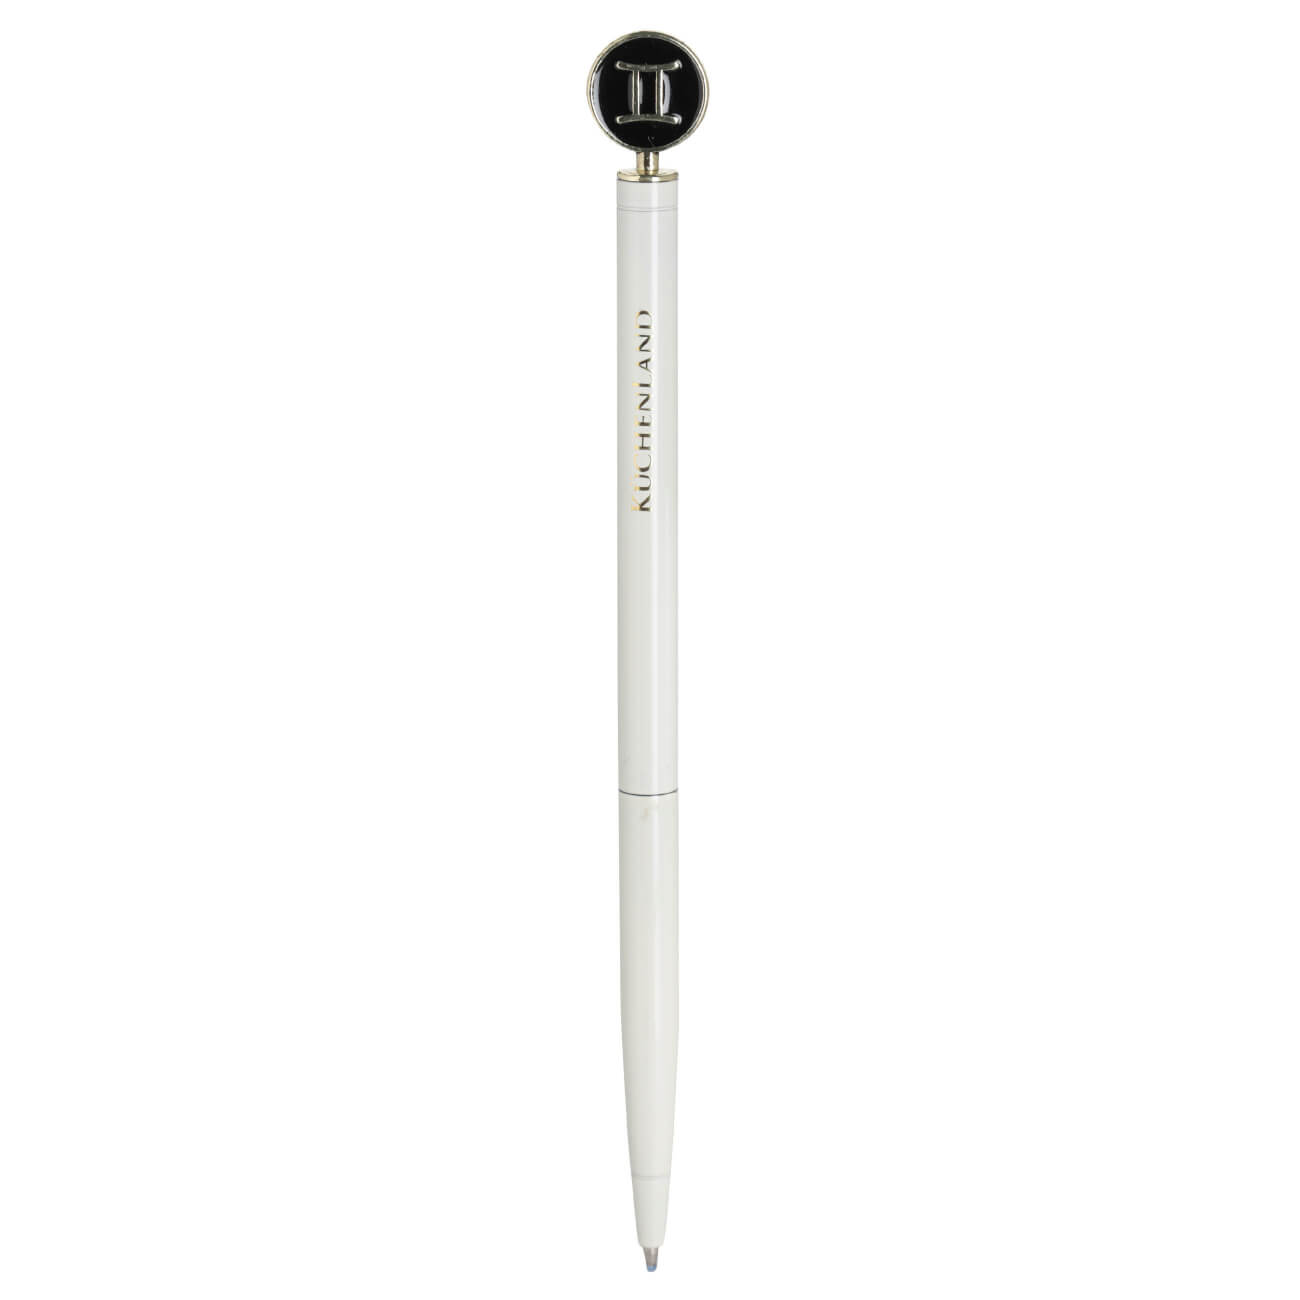 Ручка шариковая, 15 см, с фигуркой, сталь, молочно-золотистая, Близнецы, Zodiac